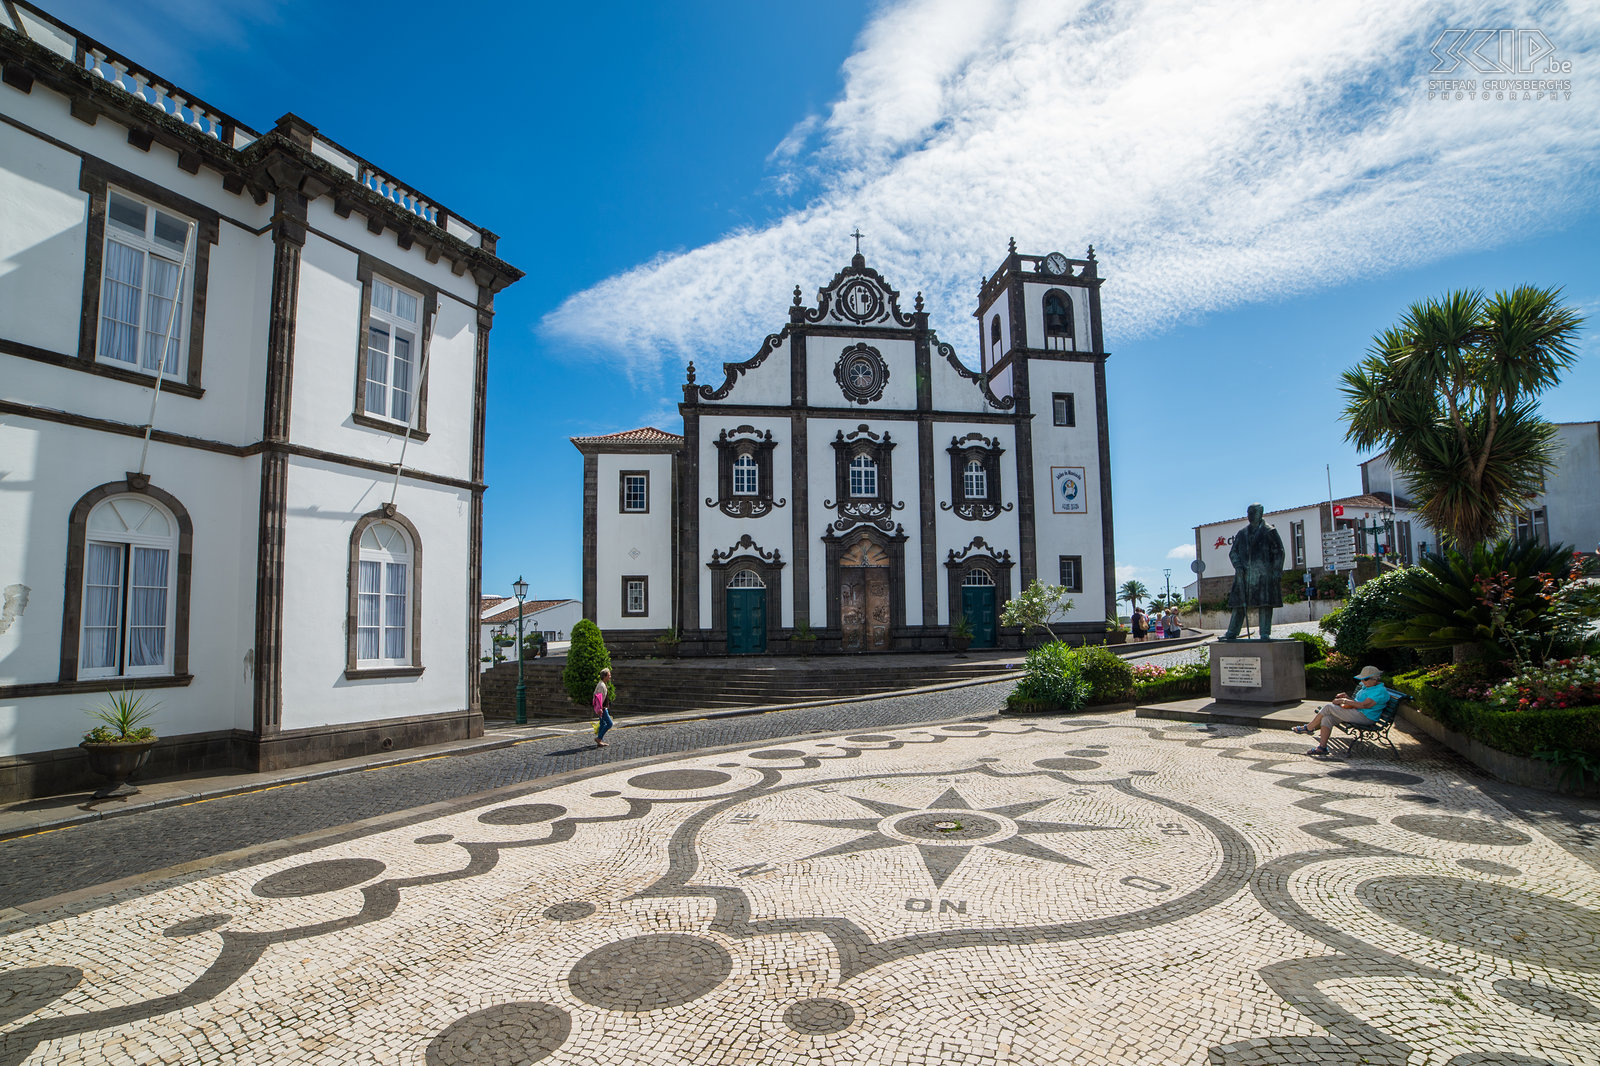 Nordeste Het hoofdplein en de kerk in het stadje Nordeste dat gelegen is in het noordoosten van het eiland São Miguel. Stefan Cruysberghs